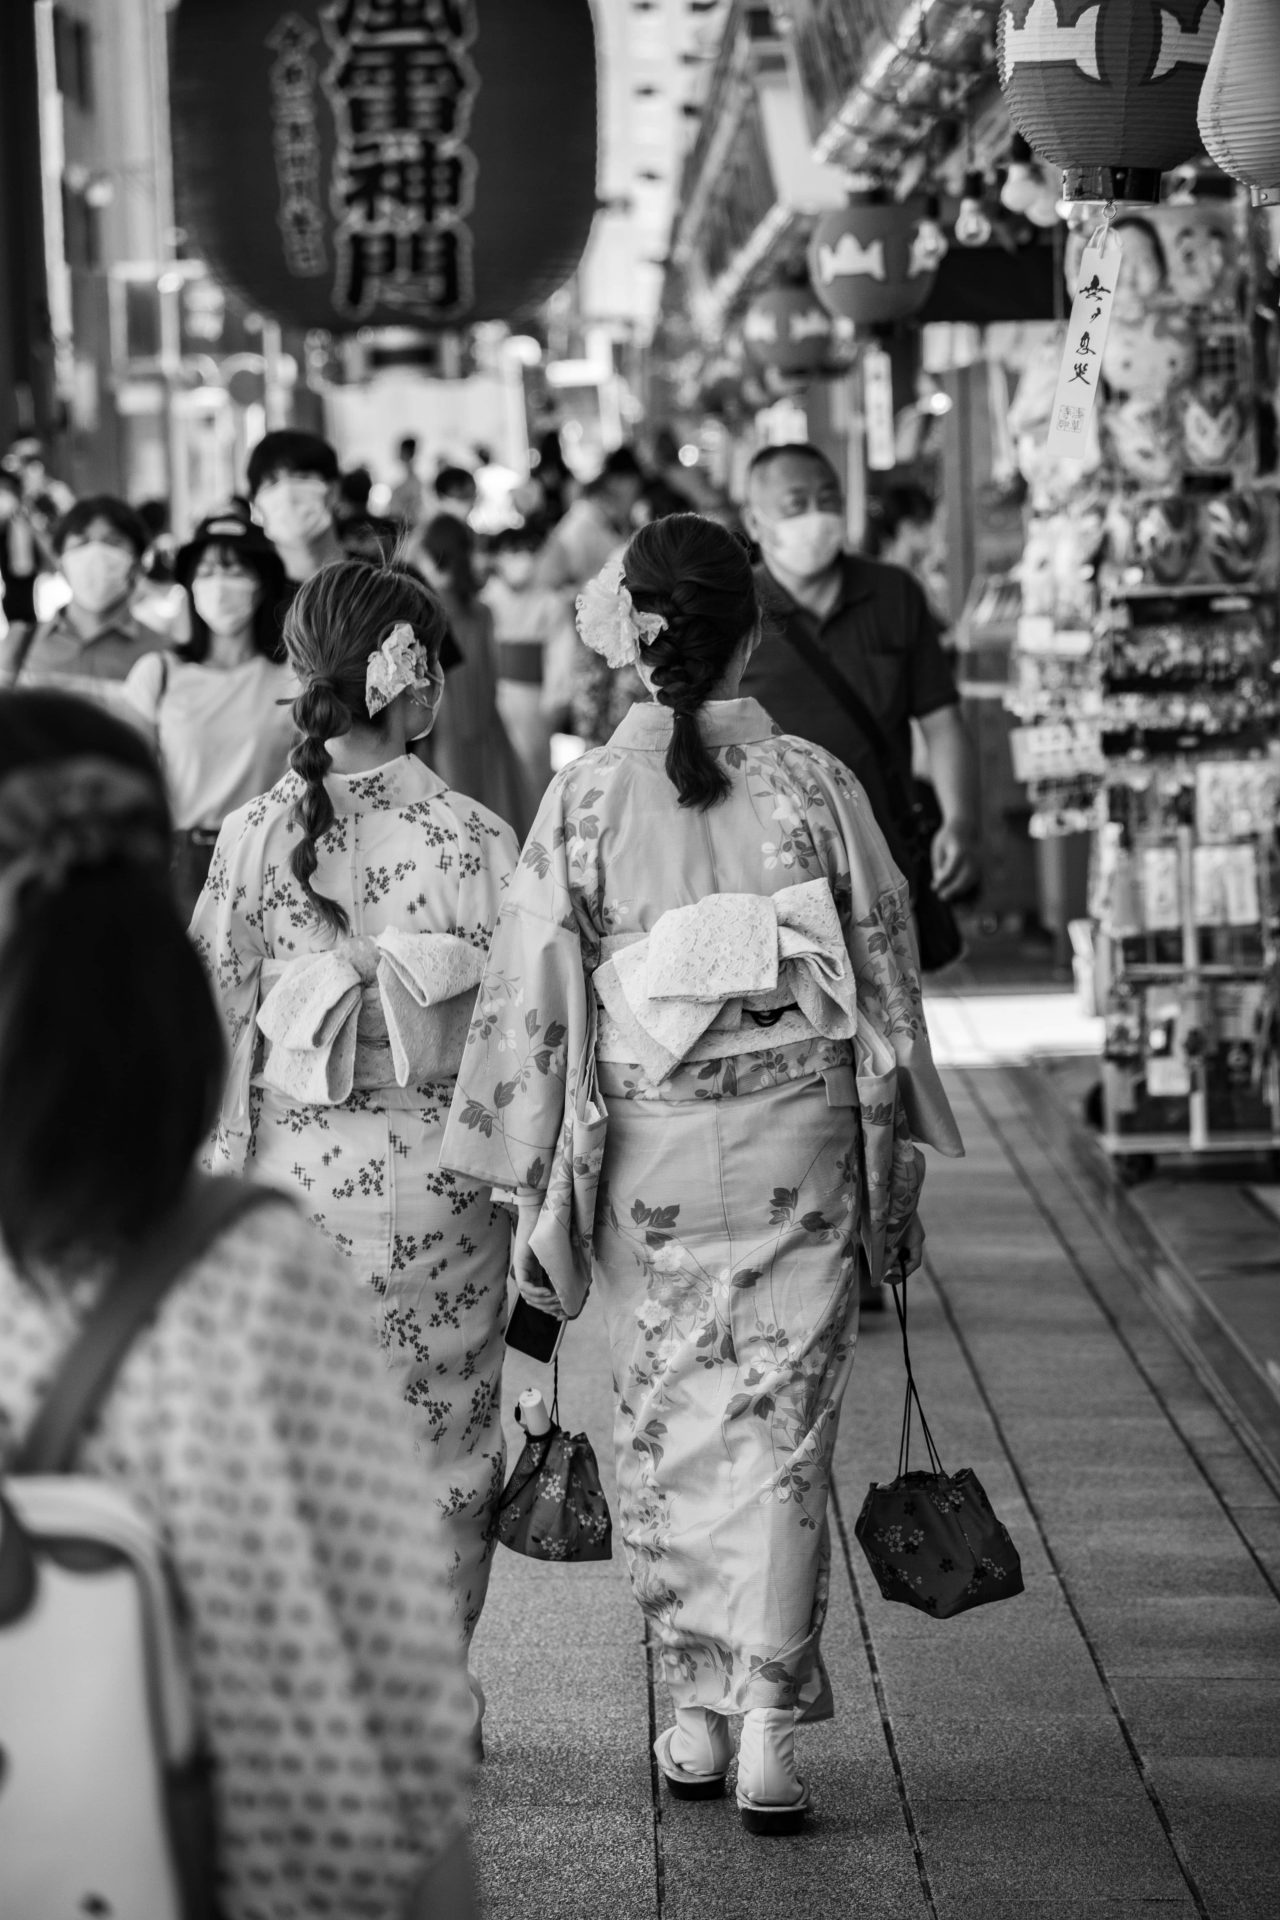 Ladies walking while wearing kimono in Asakusa